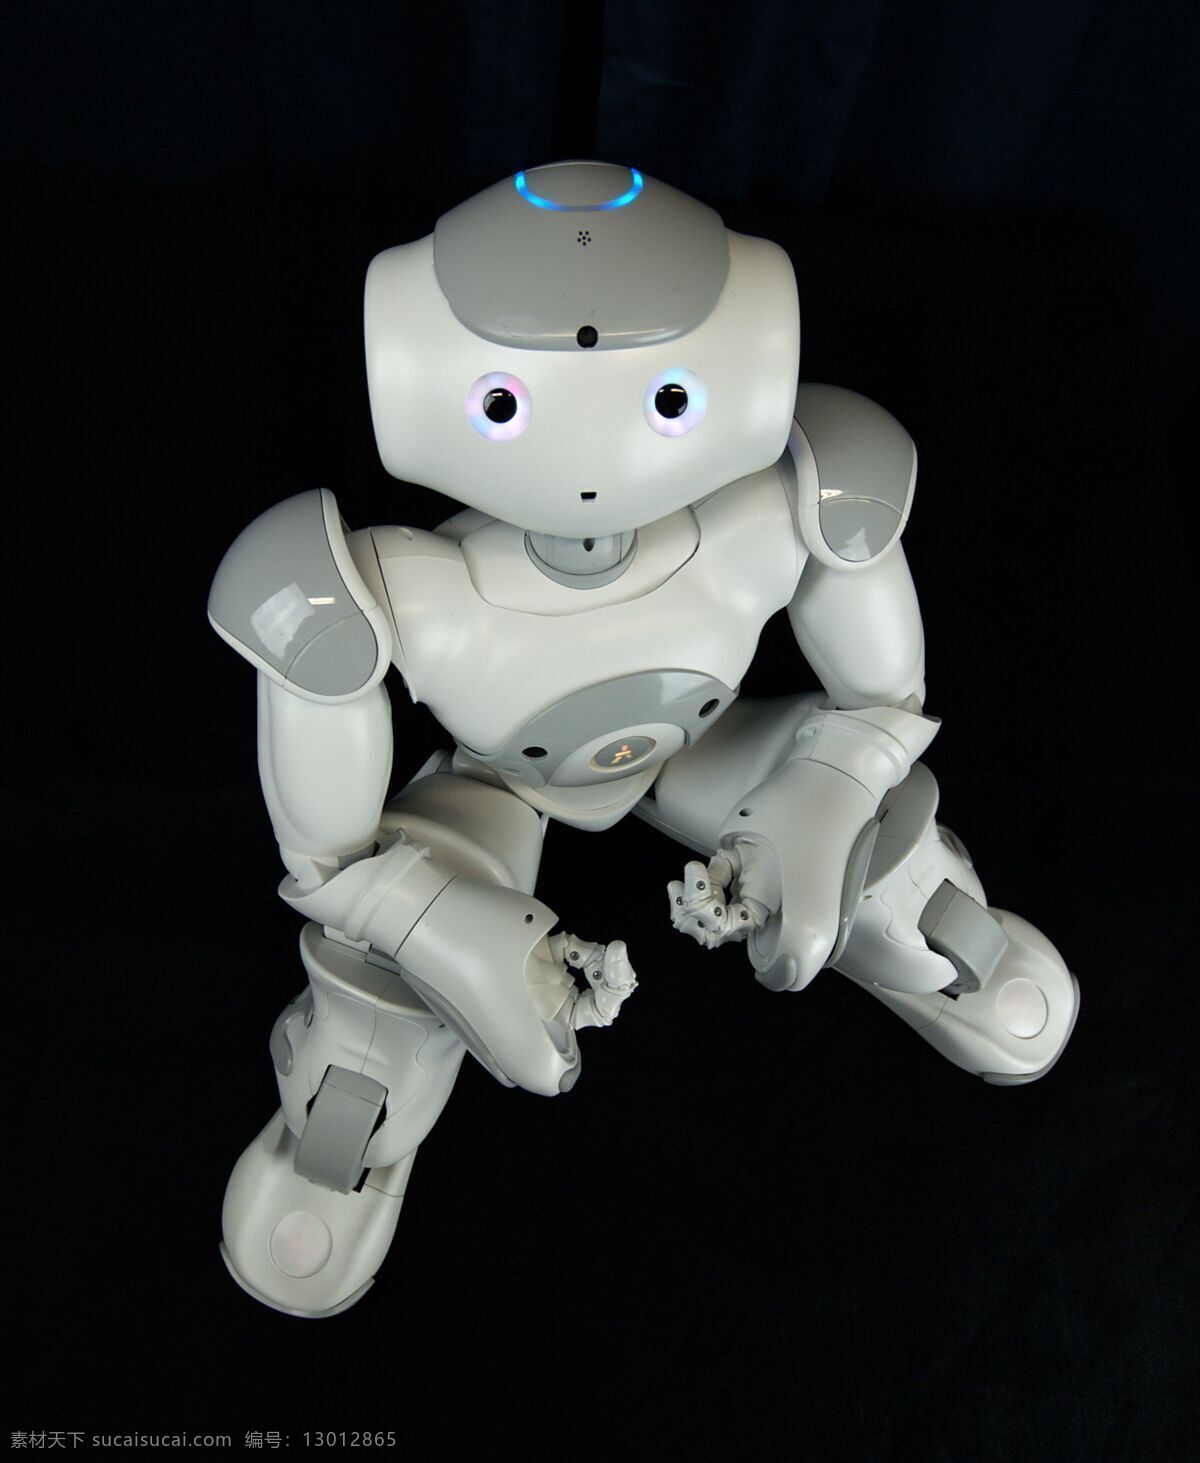 智能机器人 人形机器人 服务机器人 机器人jpg 机器人素材 现代科技 科学研究